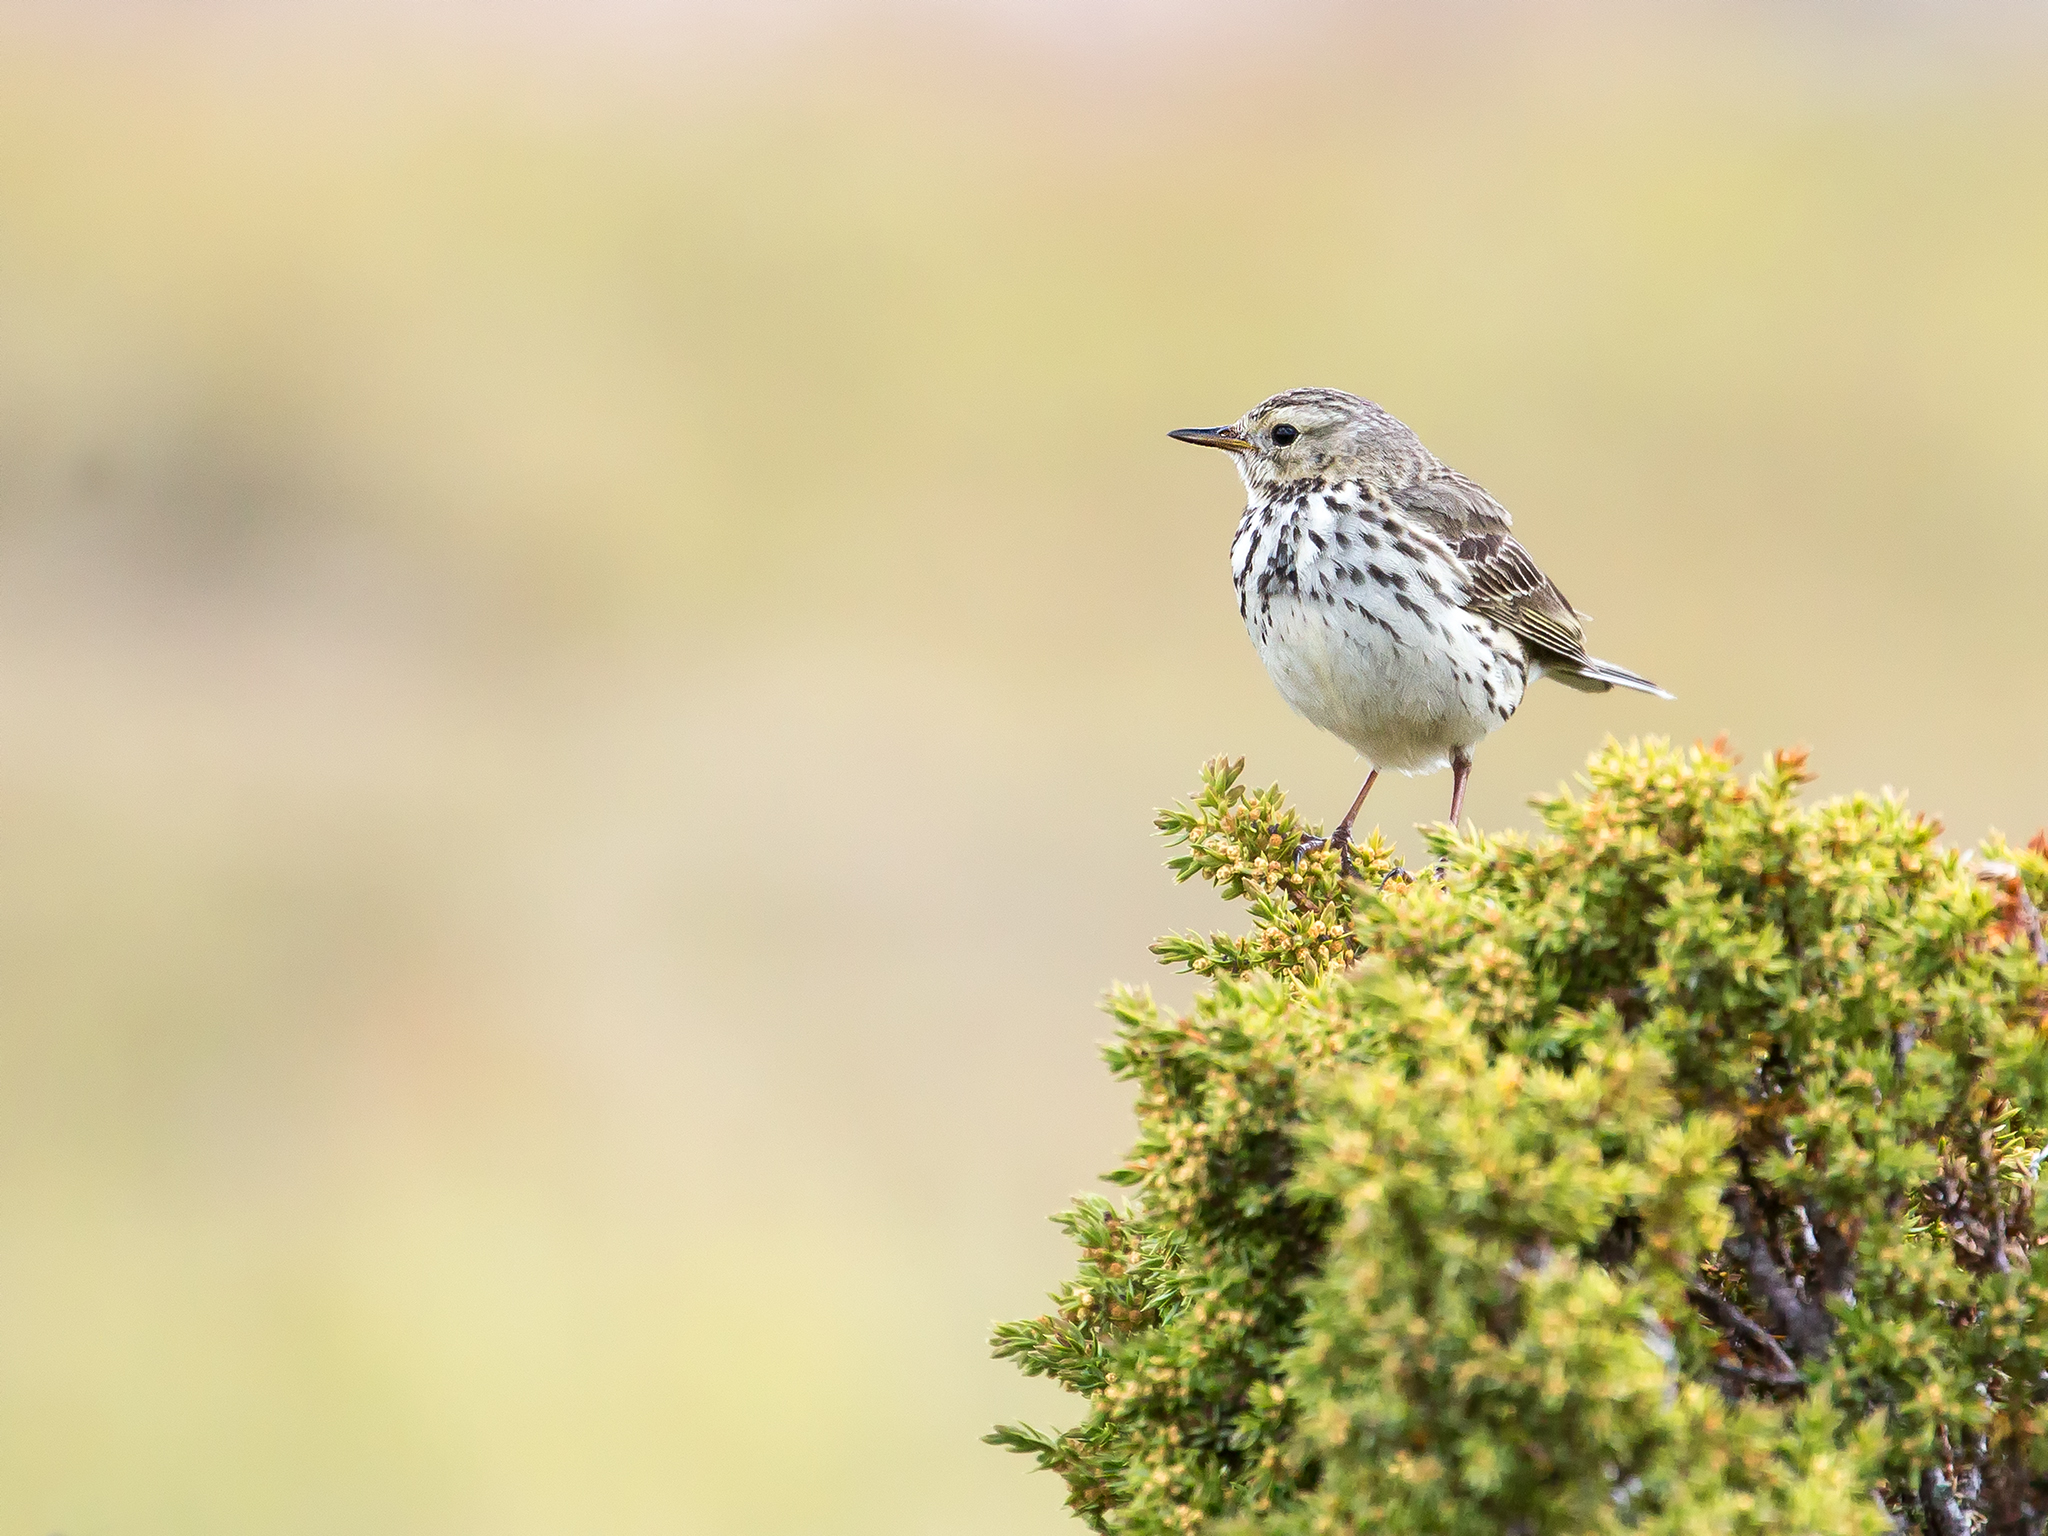   Heipiplerke     Heipiplerka er en av de vanligste fugleartene i Norge, og bestanden har blitt regna til godt over 1 million par. Den trives best til fjells i område med lite vegetasjon      Dovrefjell, Fostumyra   